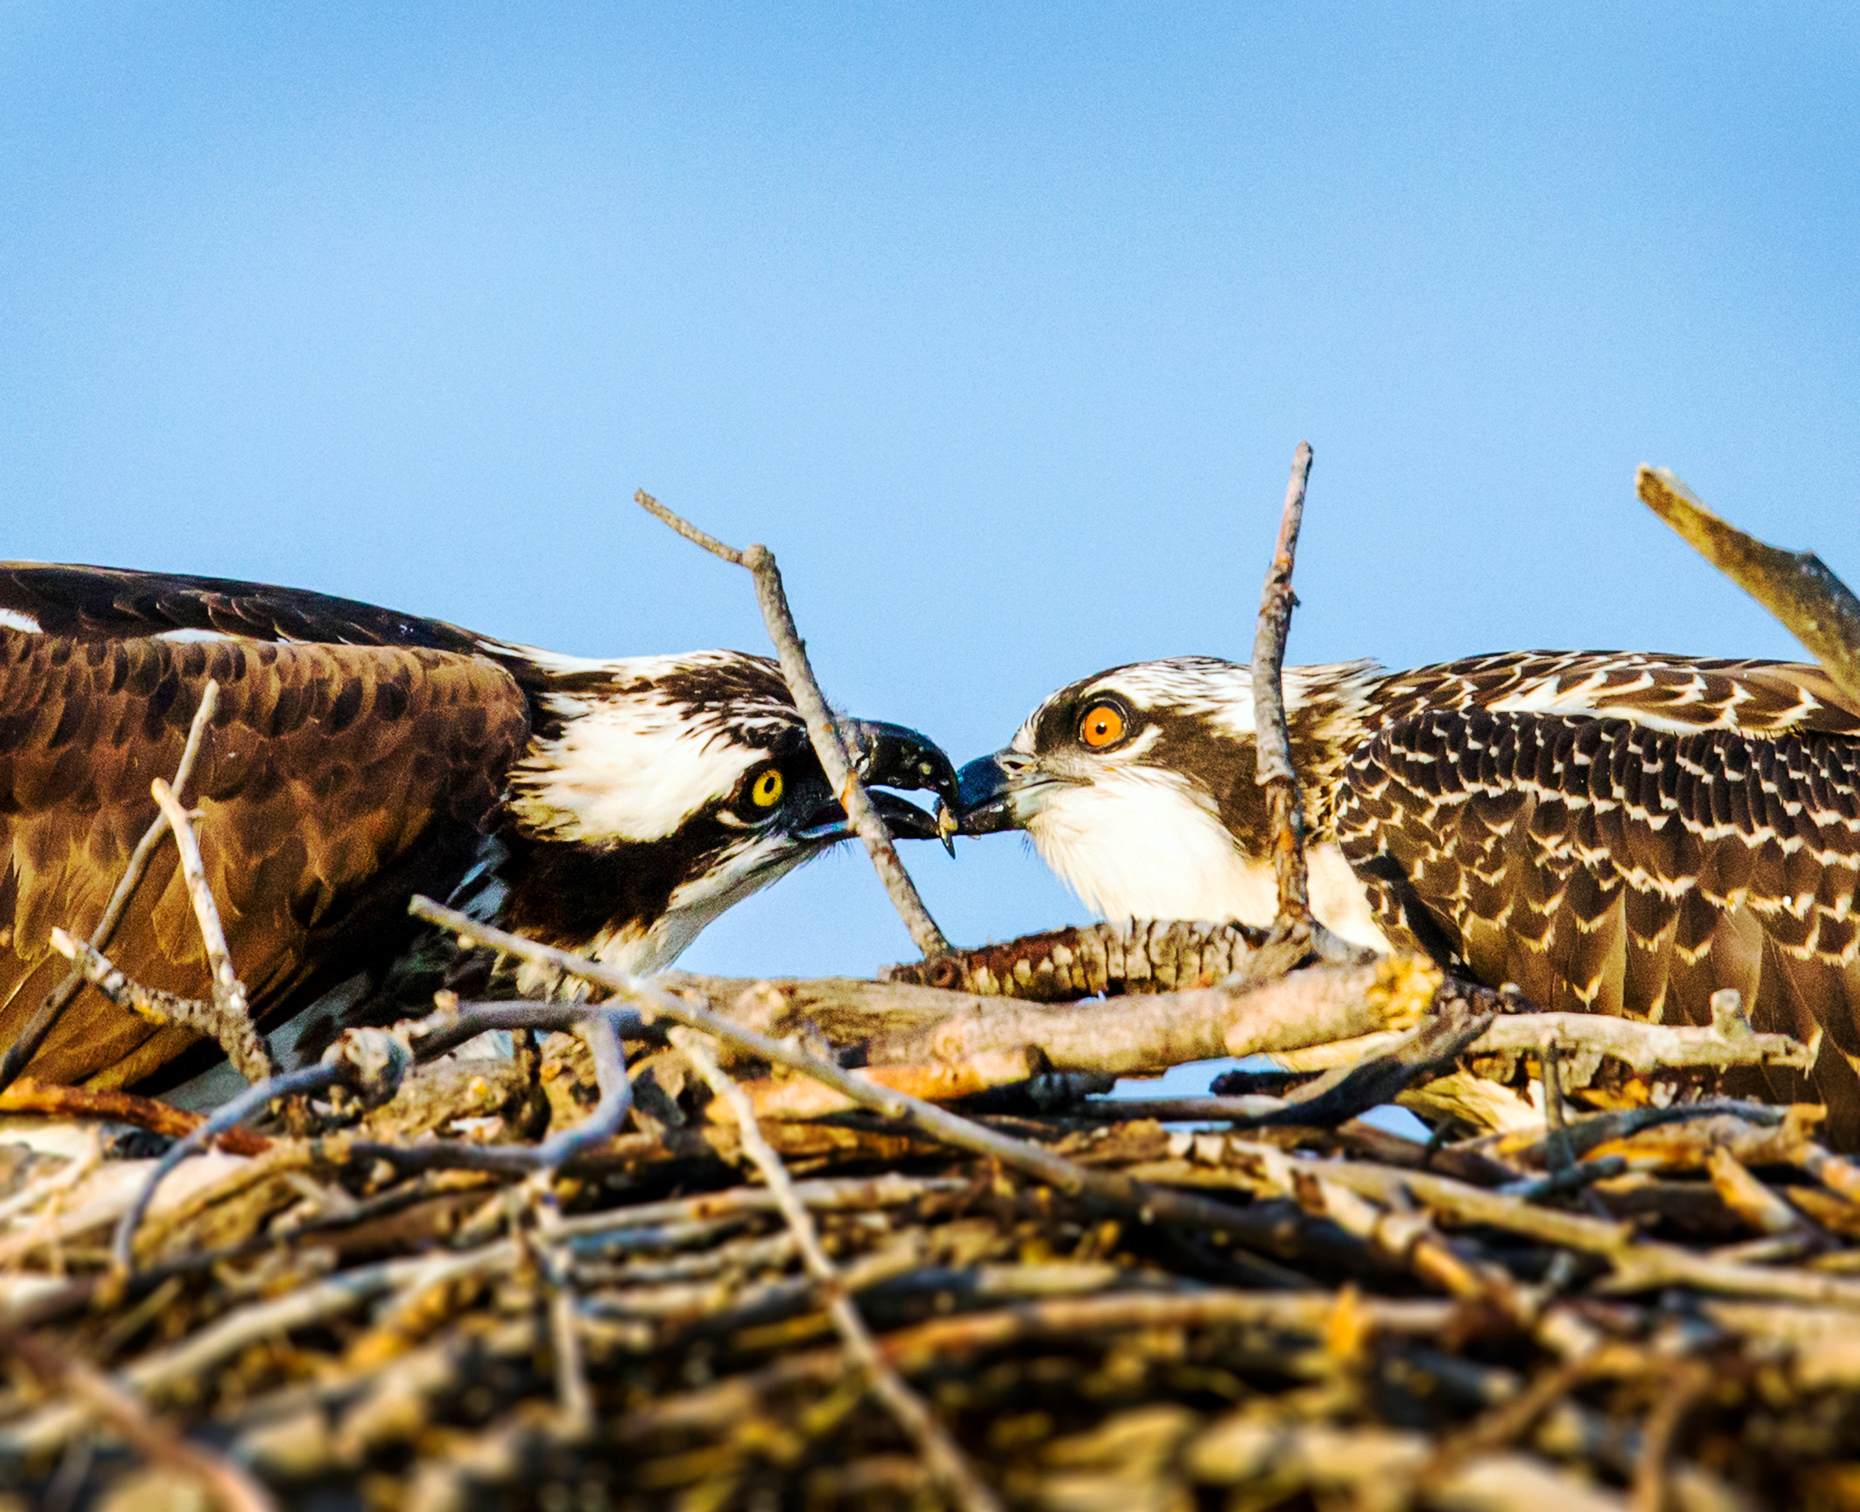 Adult Osprey feeding fish to a chick on nest, Pandion haliaetus, sea hawk, fish eagle, river hawk, fish hawk, raptor, Chaffee County, Colorado, USA